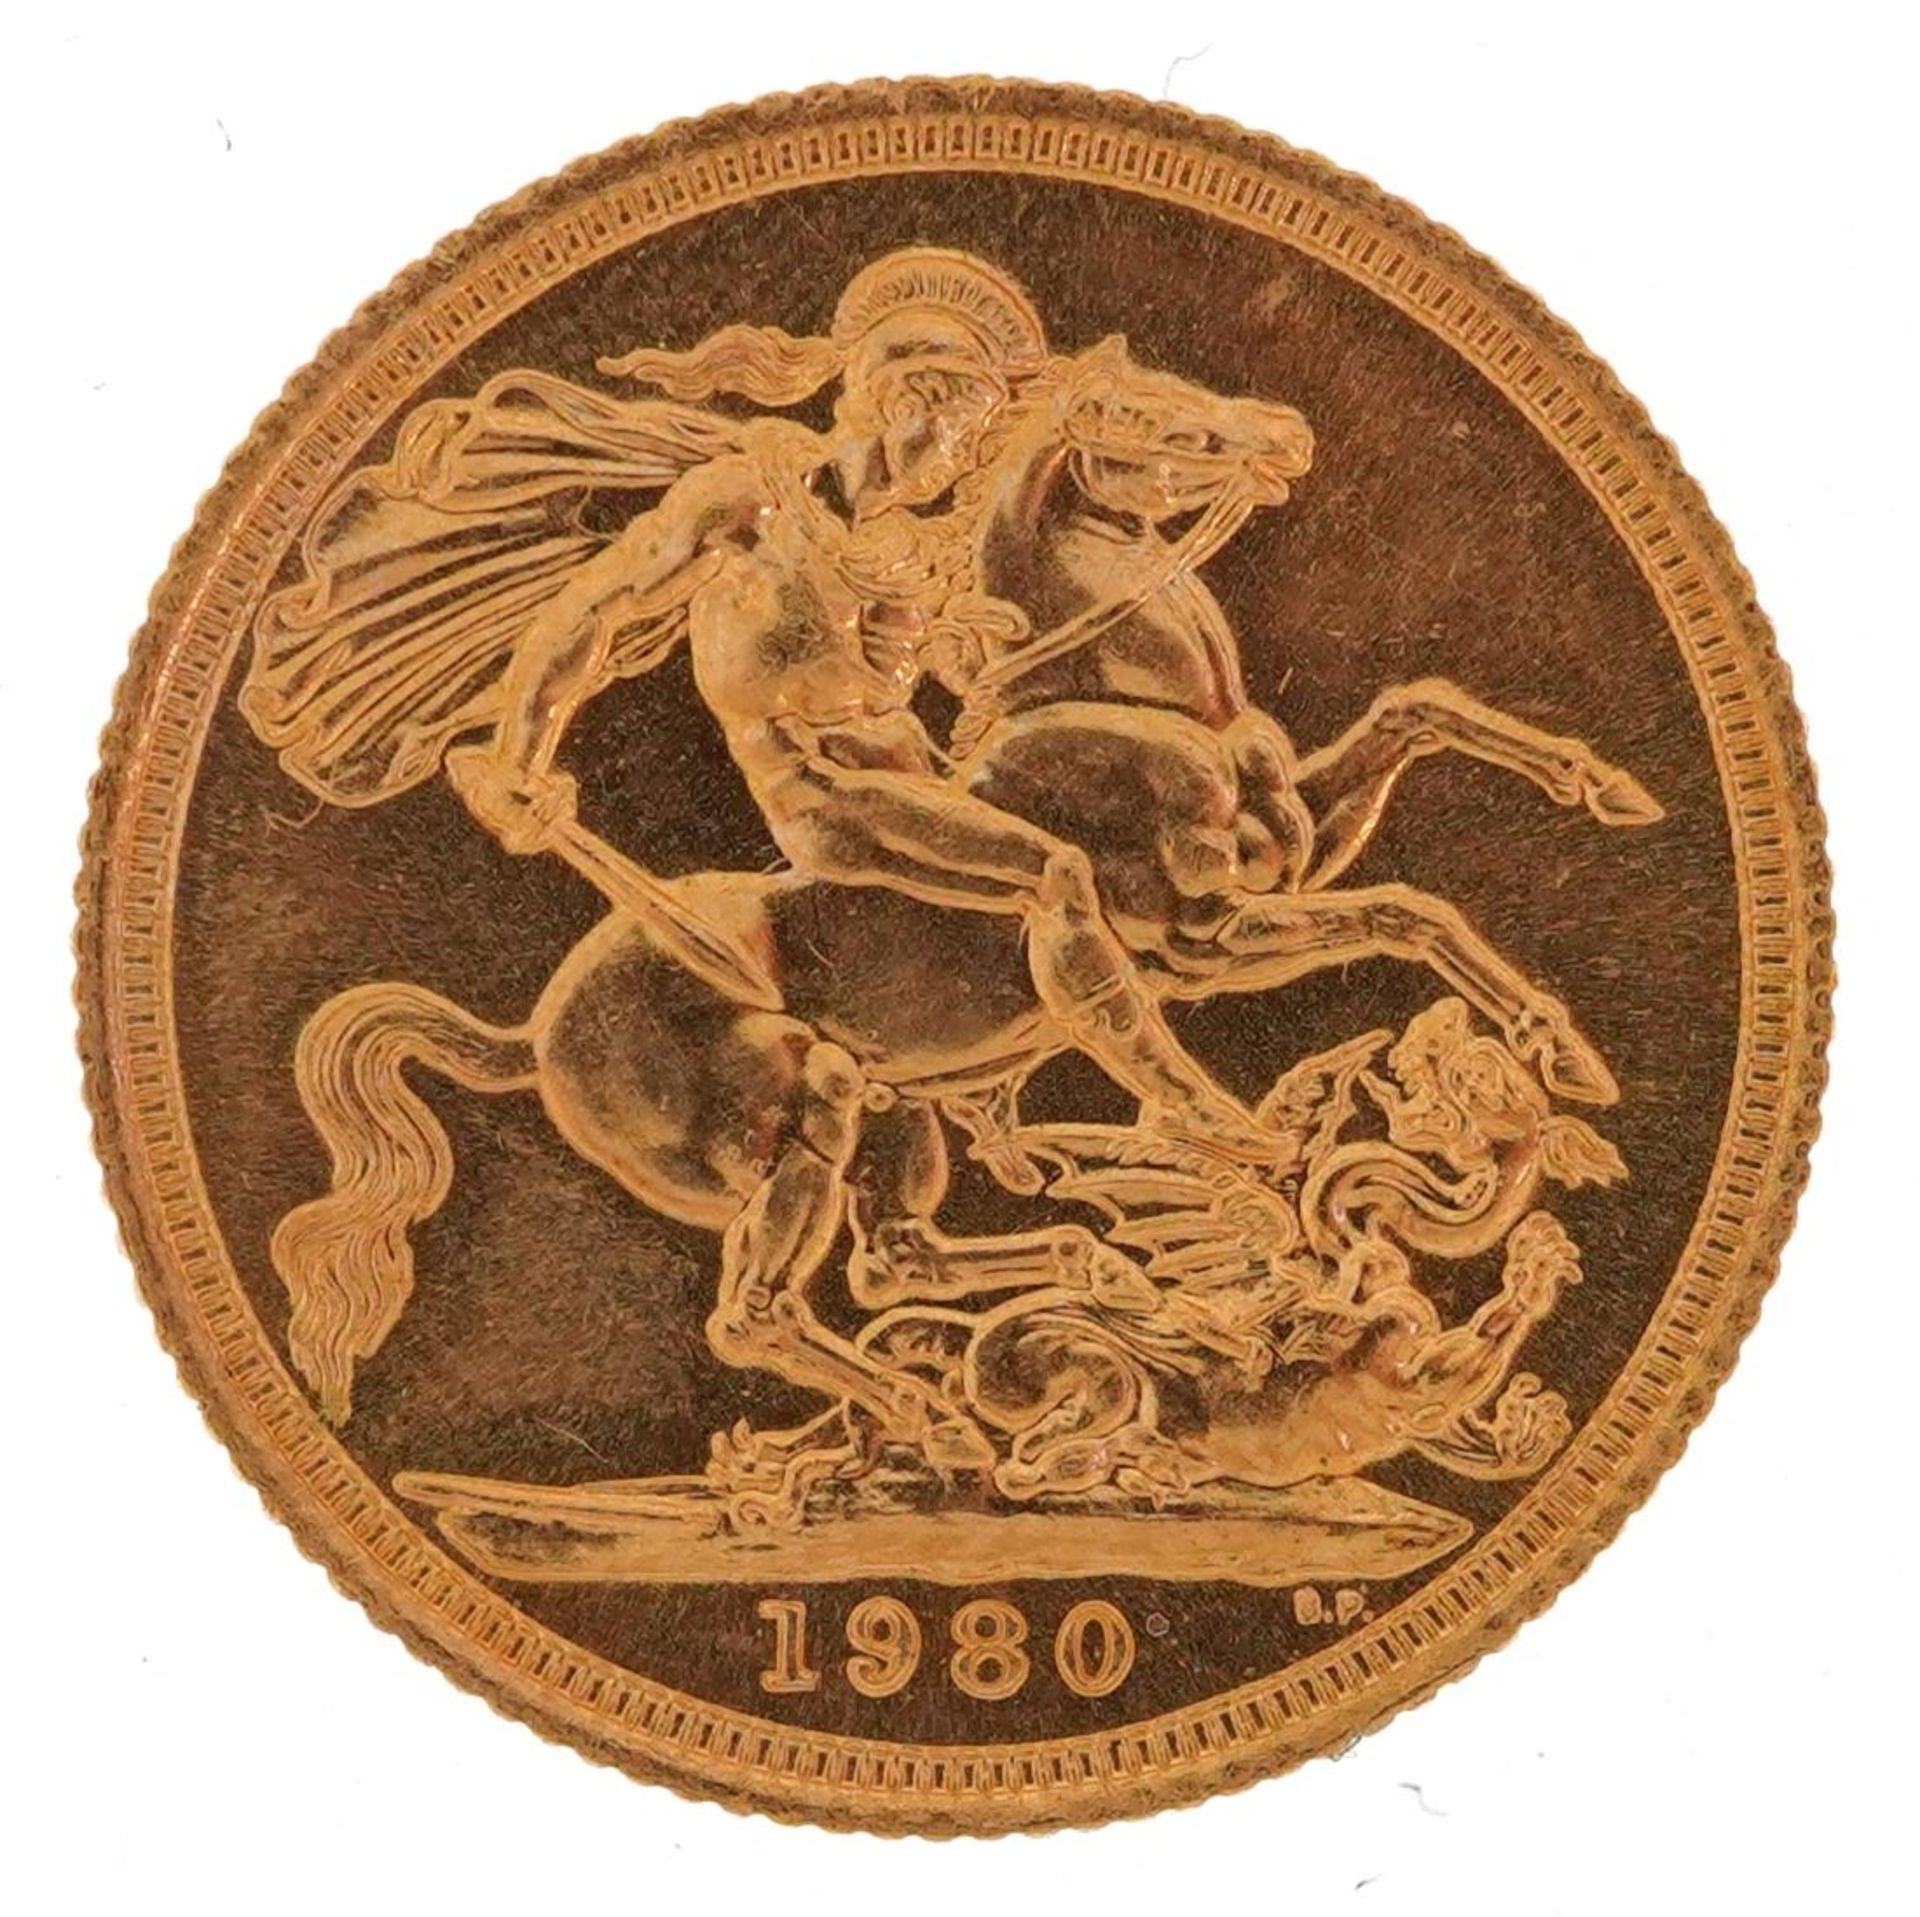 Elizabeth II 1980 gold sovereign